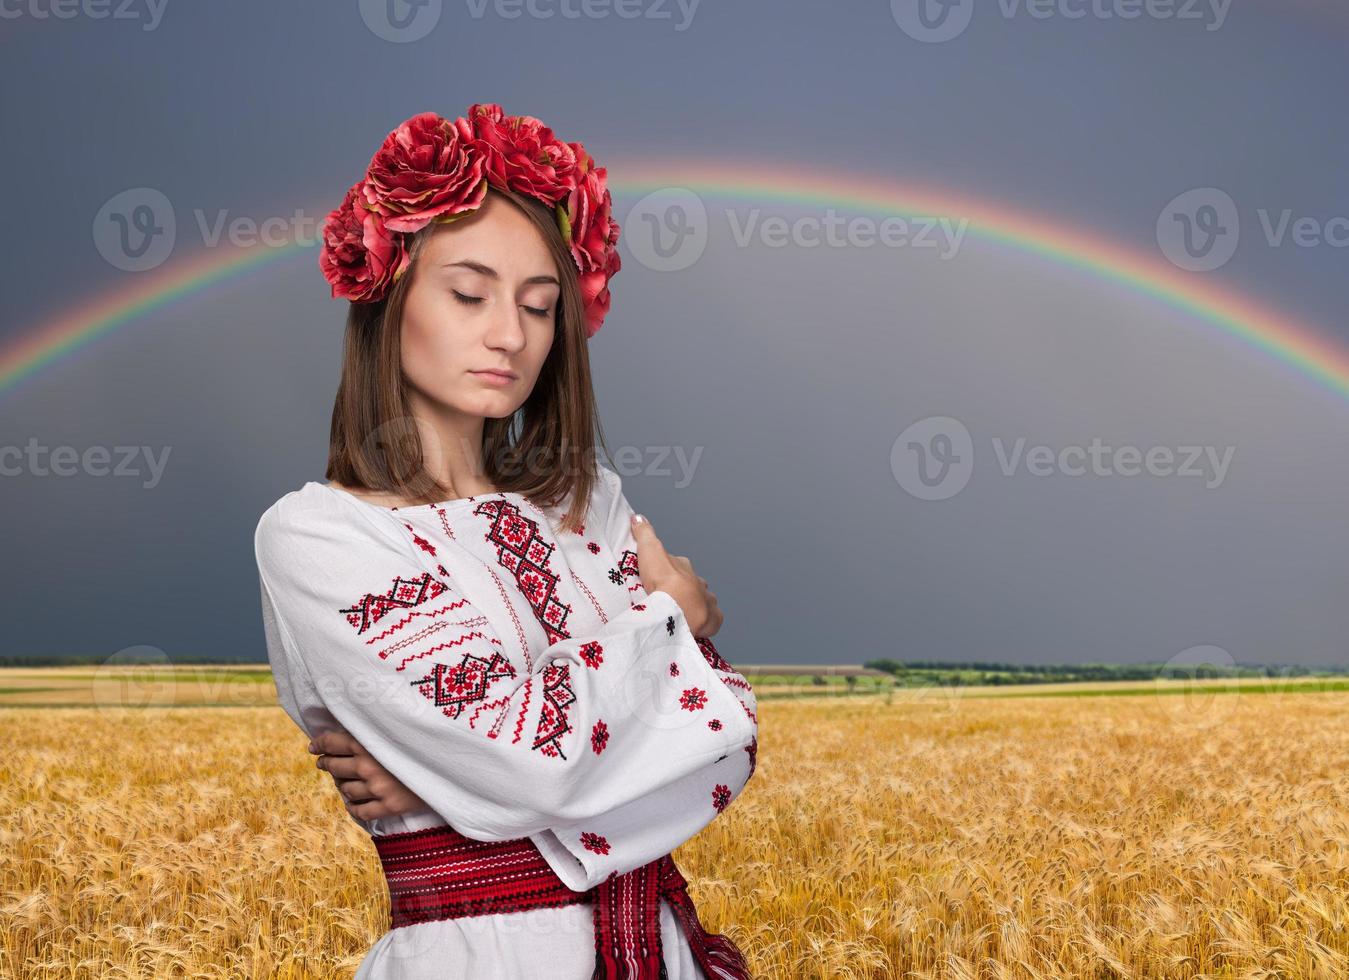 jovem de fato nacional ucraniano foto